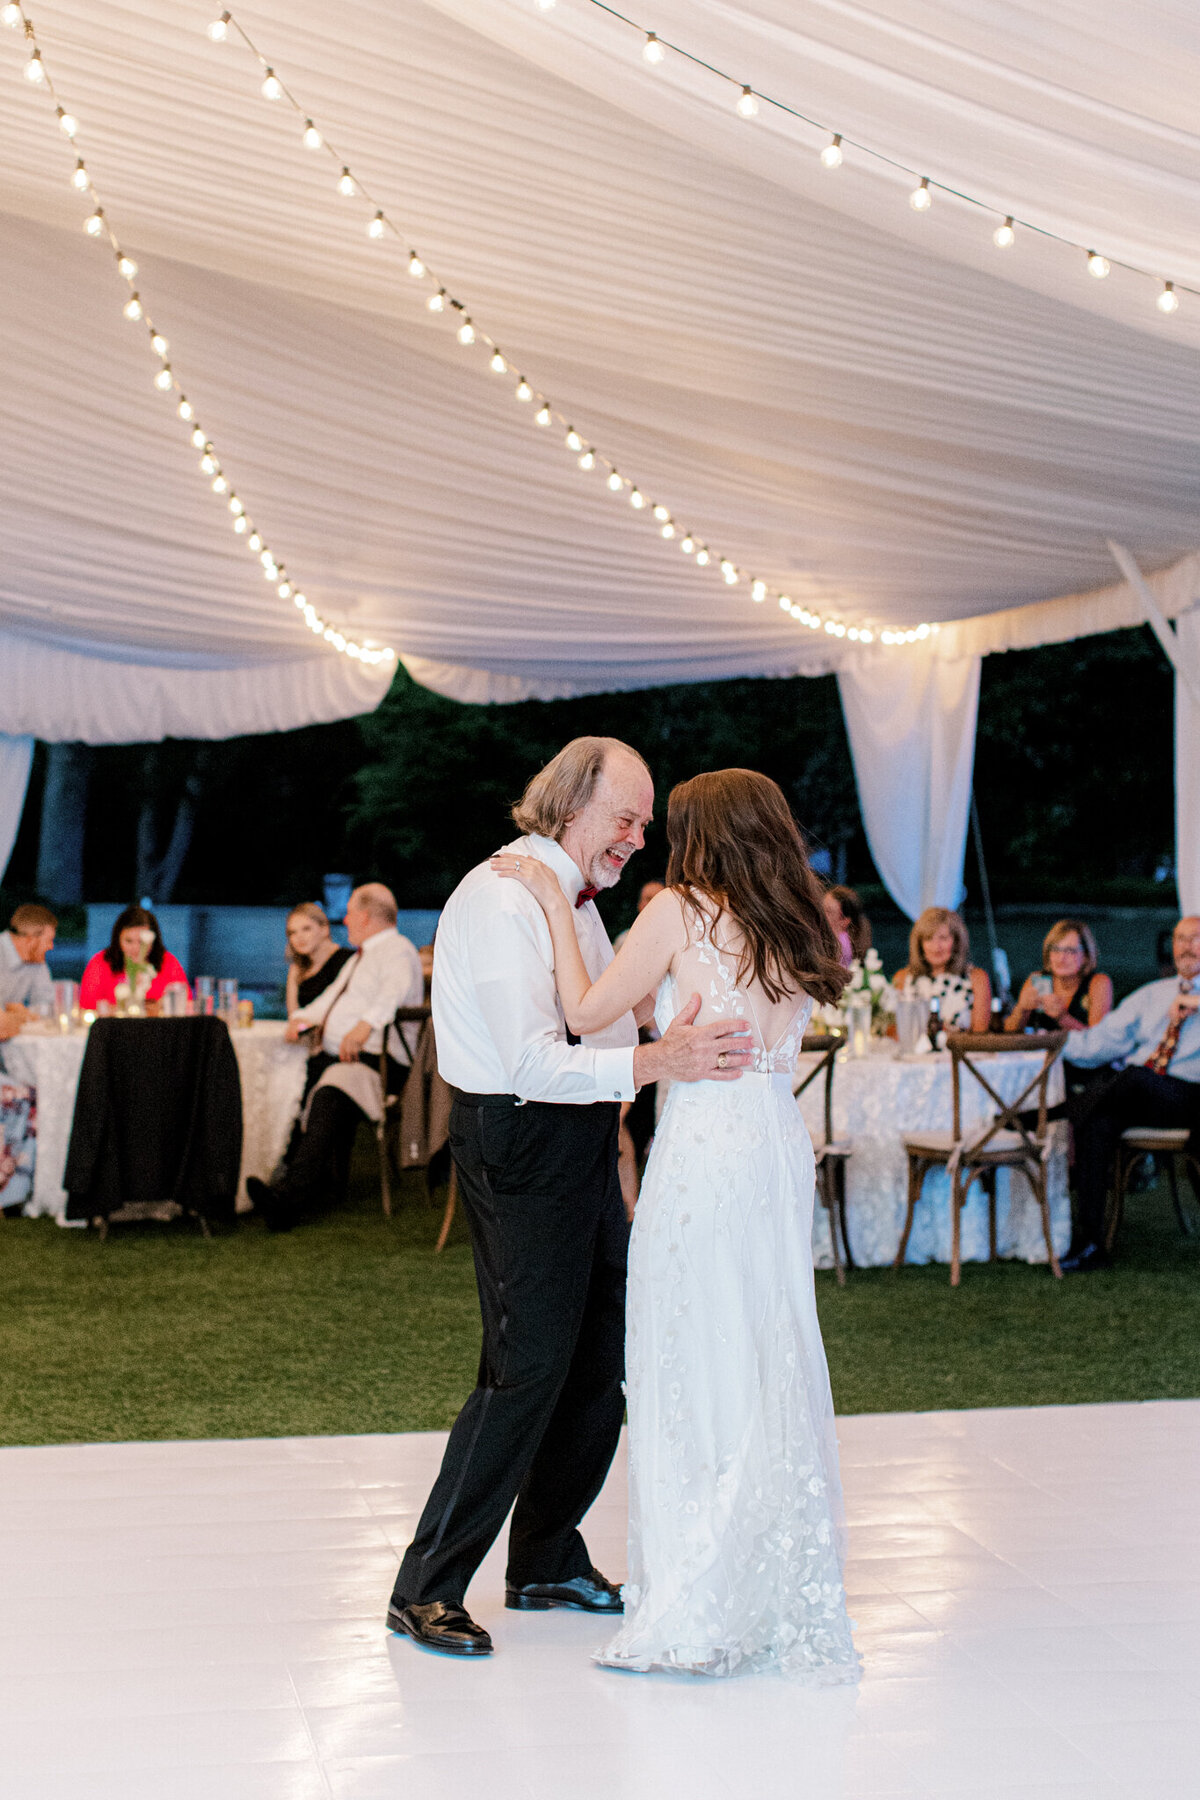 Gena & Matt's Wedding at the Dallas Arboretum | Dallas Wedding Photographer | Sami Kathryn Photography-249